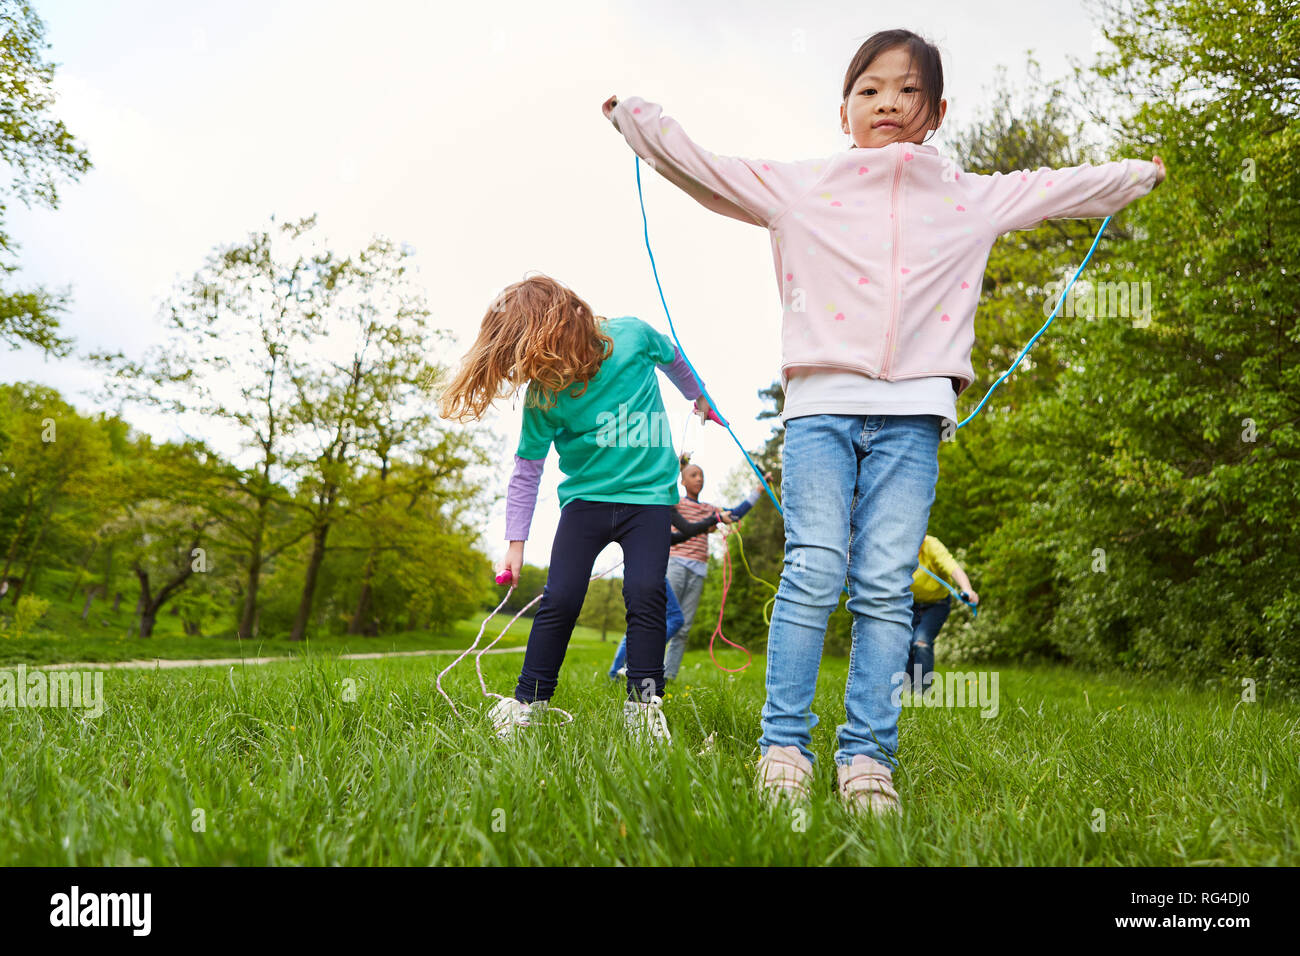 Kinder im Kindergarten zusammen beim springen Seil auf einer Wiese im Sommer Stockfoto